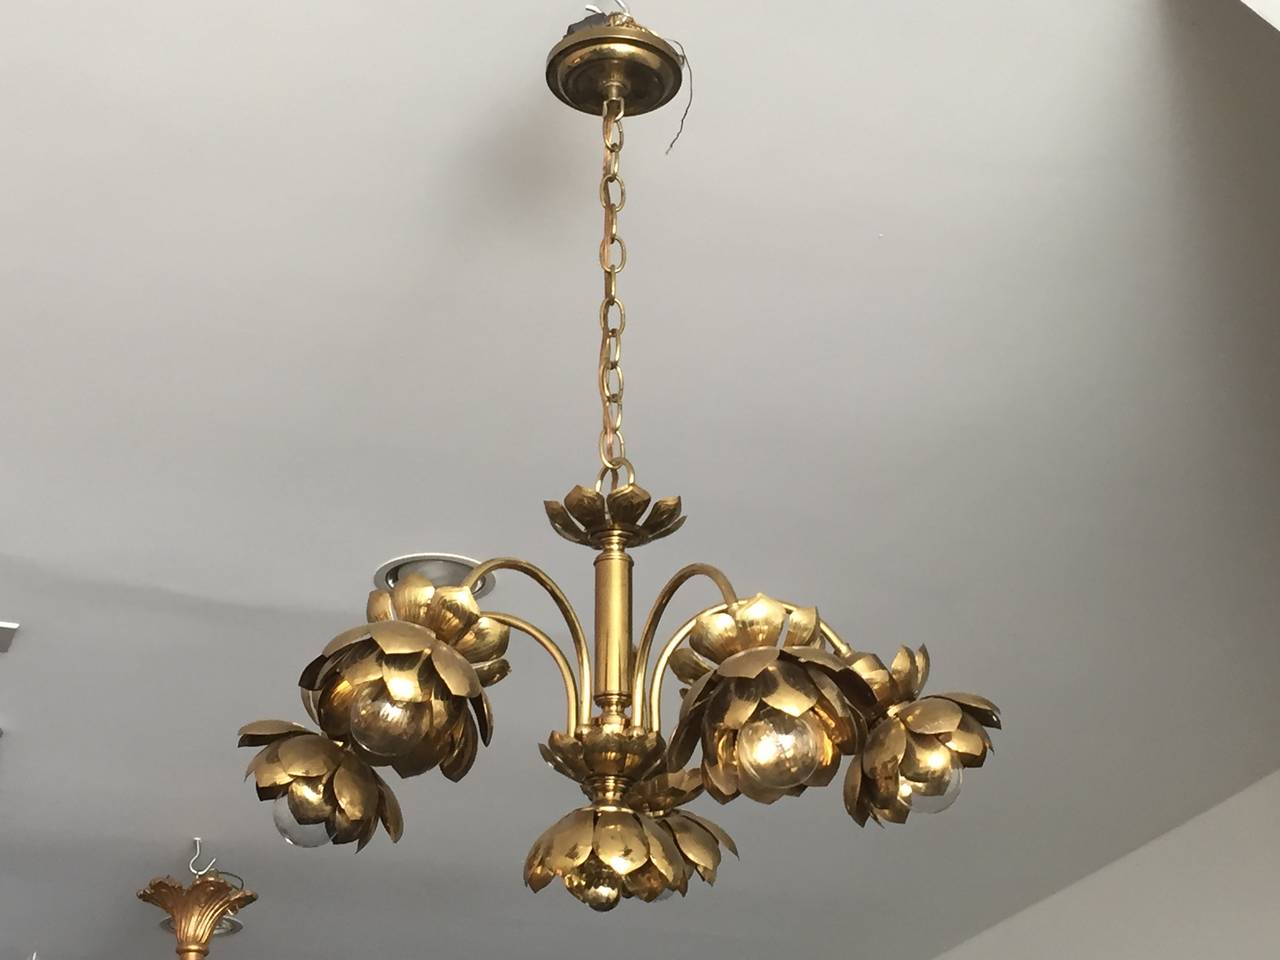 Five-arm brass lotus chandelier by Feldman.
Each lotus is about 6